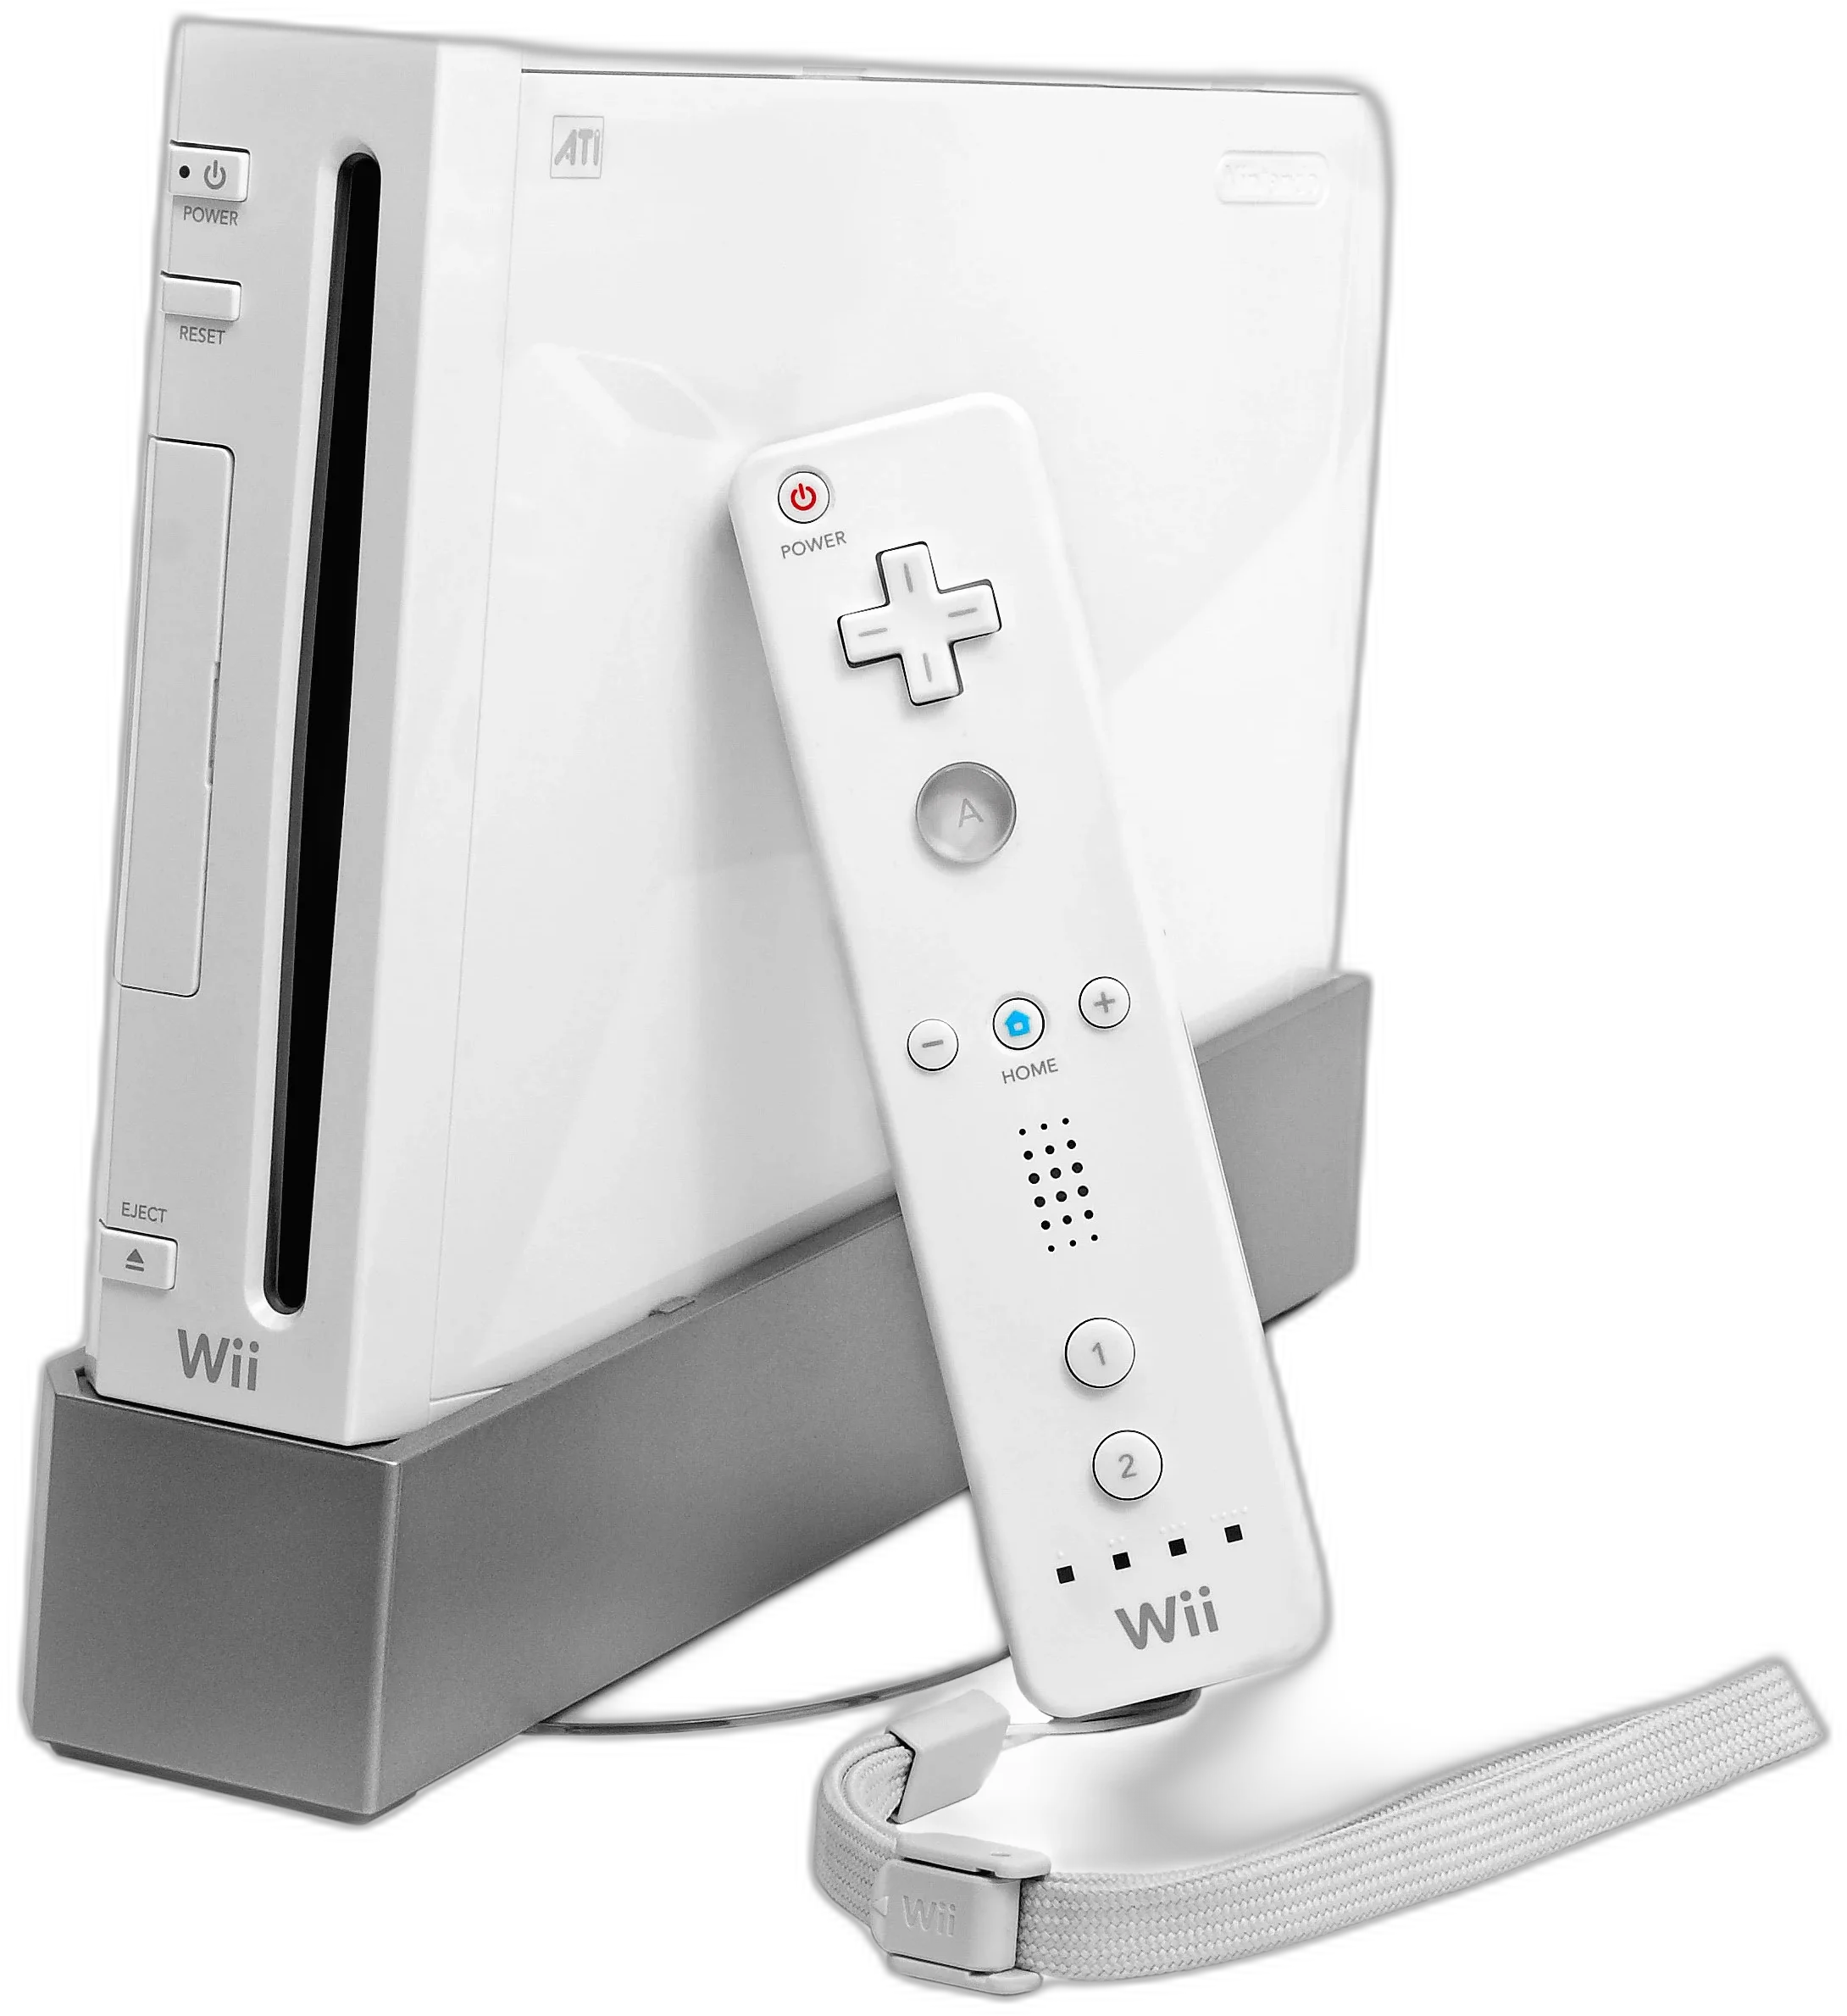  Nintendo Wii White Console [BR]